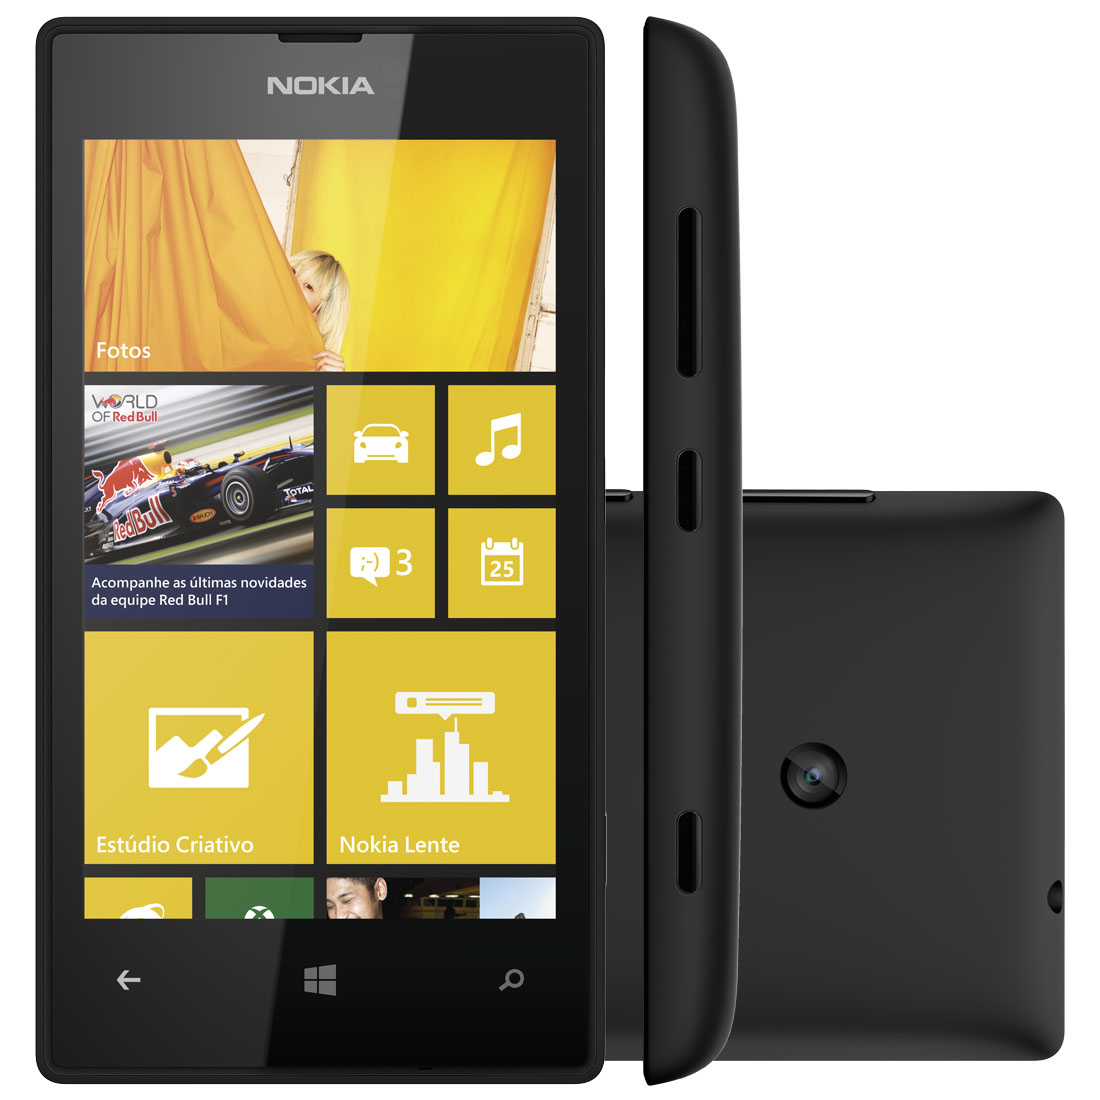 Smartphone Lumia 520 - Windows Phone 8, Camera 5MP, Dual Core 1GHz, 8GB, Wi-Fi, 3G (Desbloqueado) Preto